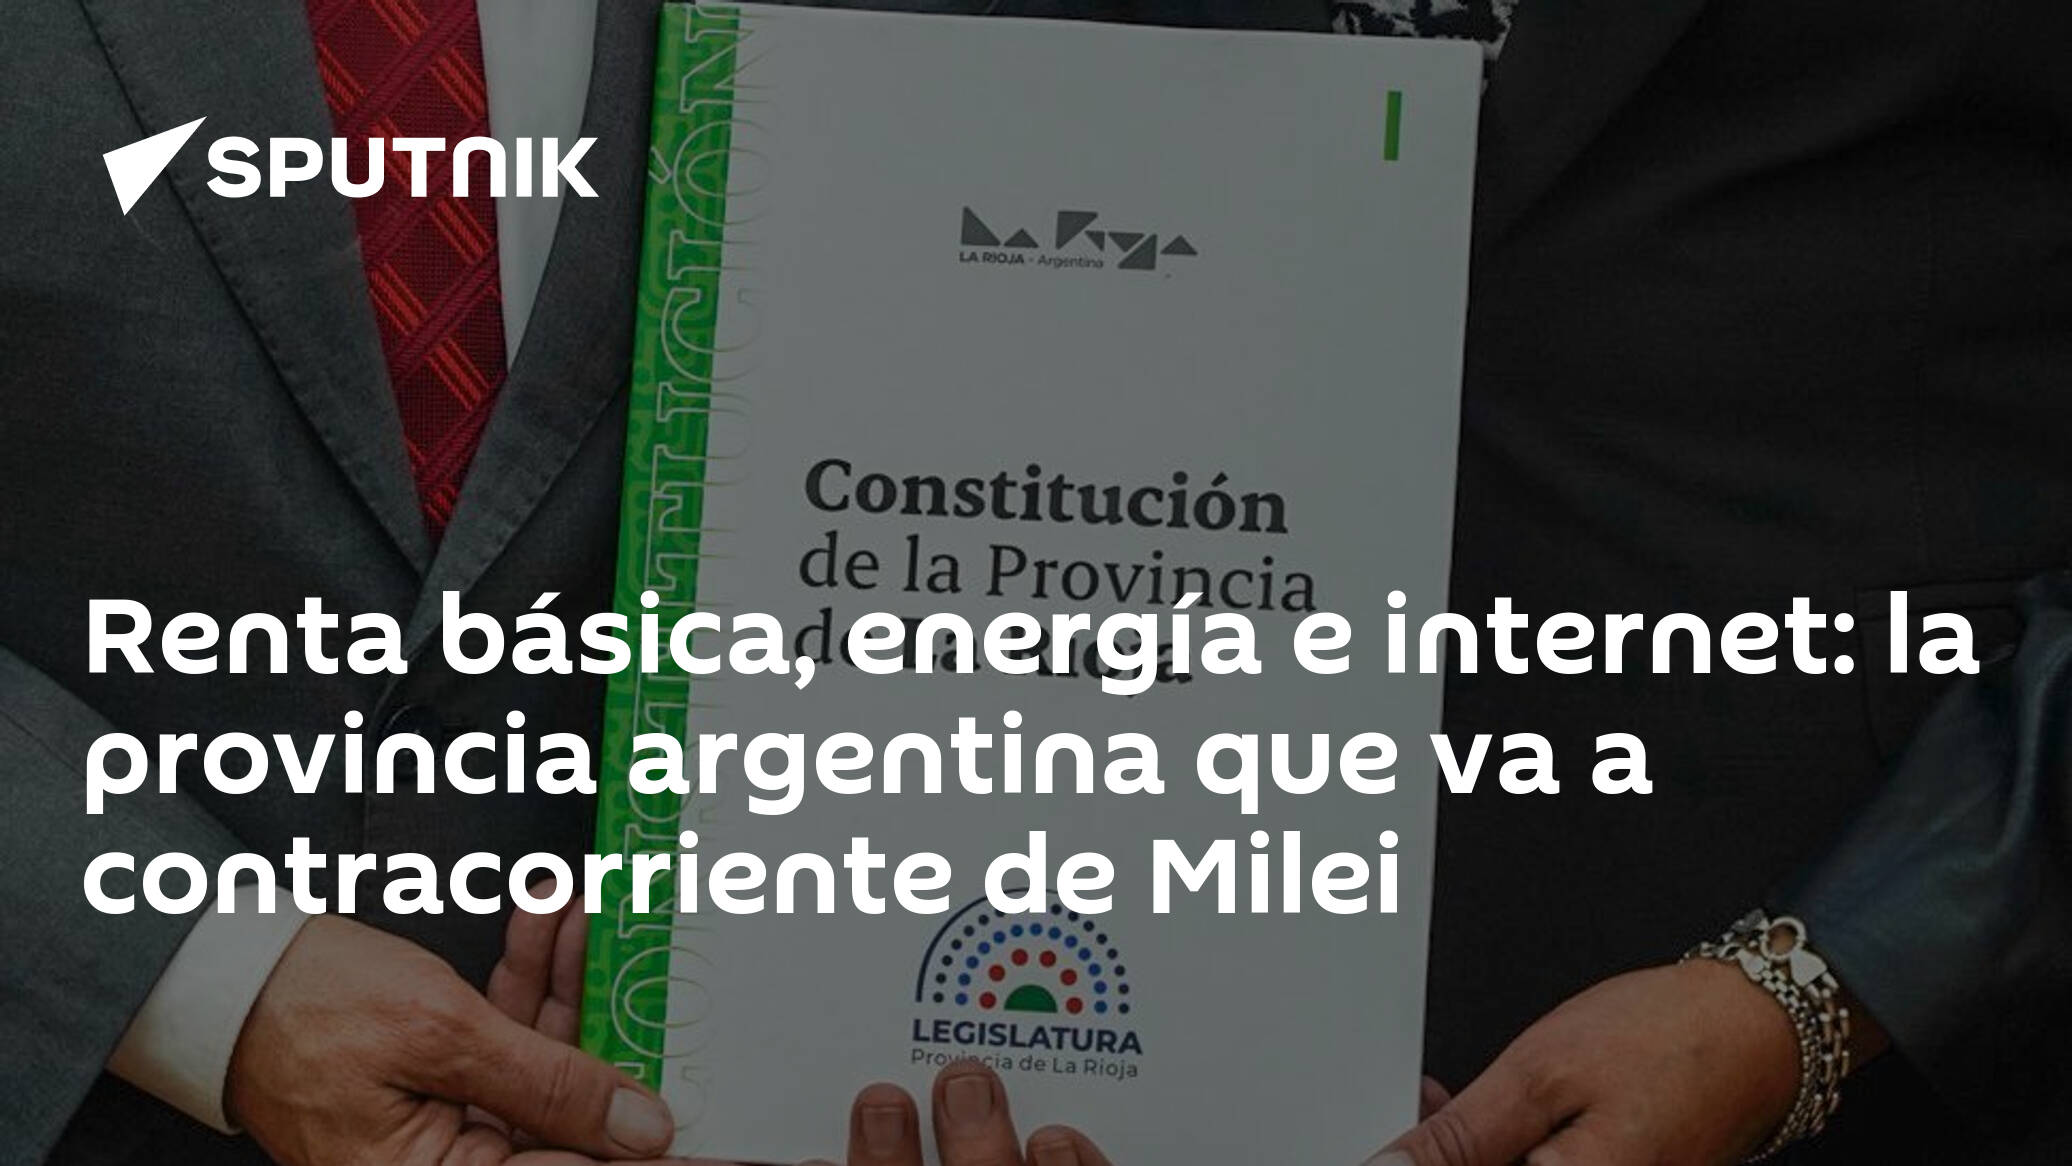 Renta básica, energía e internet: la provincia argentina que va a contracorriente de Milei